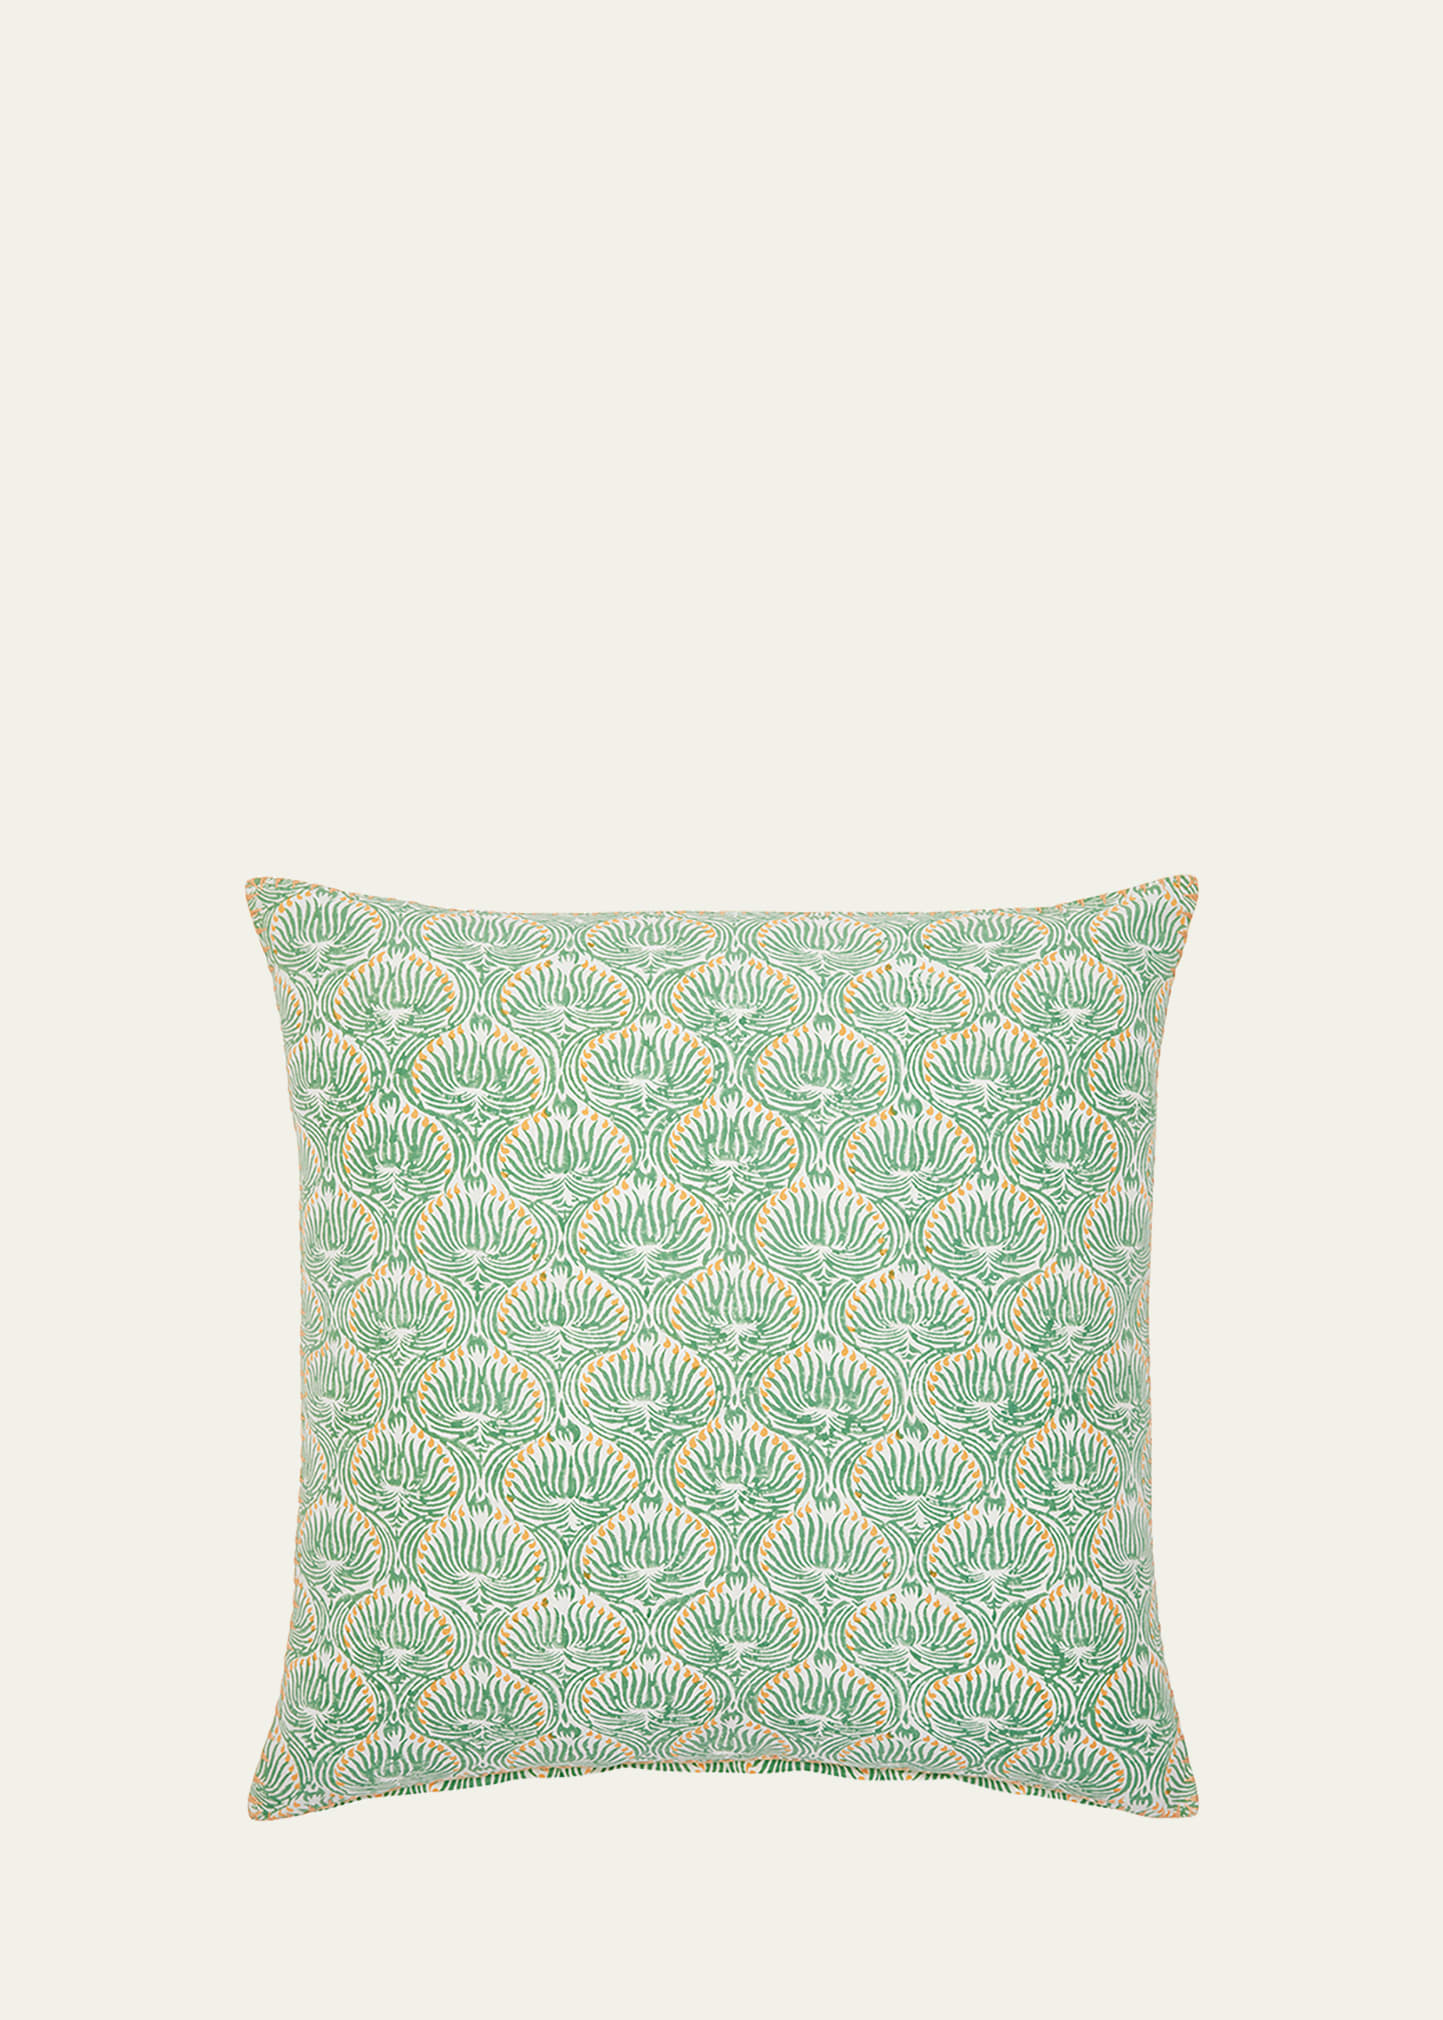 Divit Sage Decorative Pillow, 22"Sq.